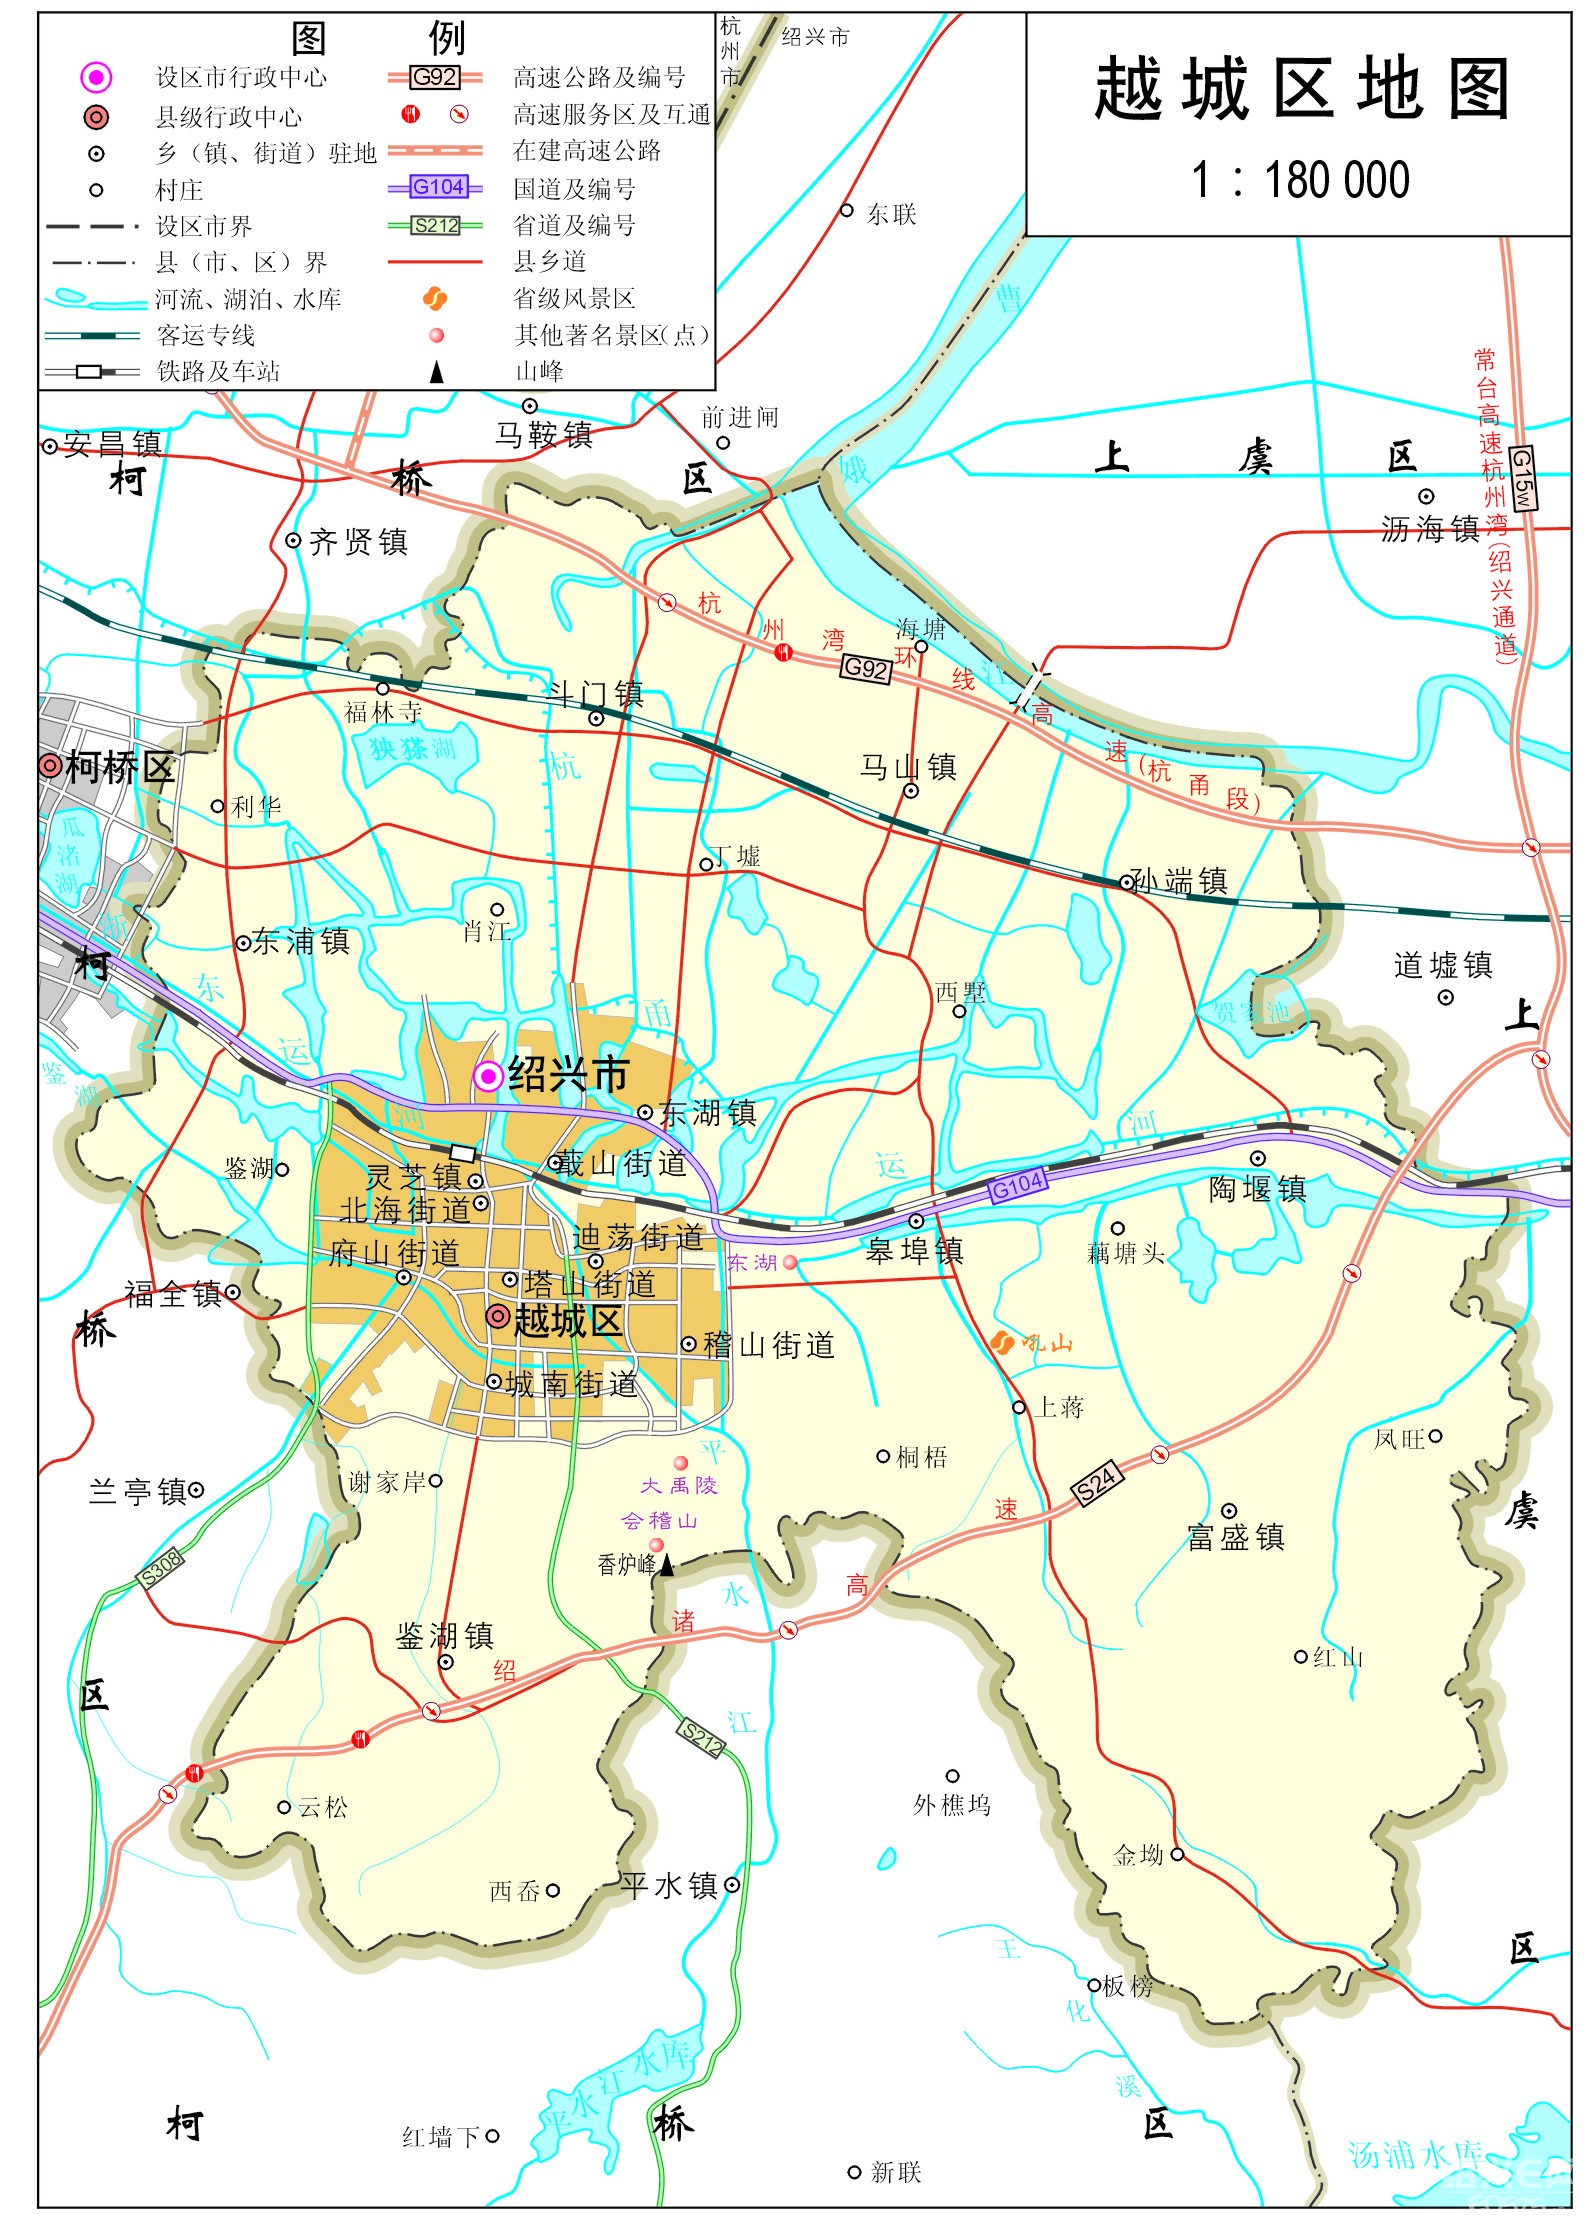 绍兴市新版市区 地图 :三区+三个市直开发区|第四城市